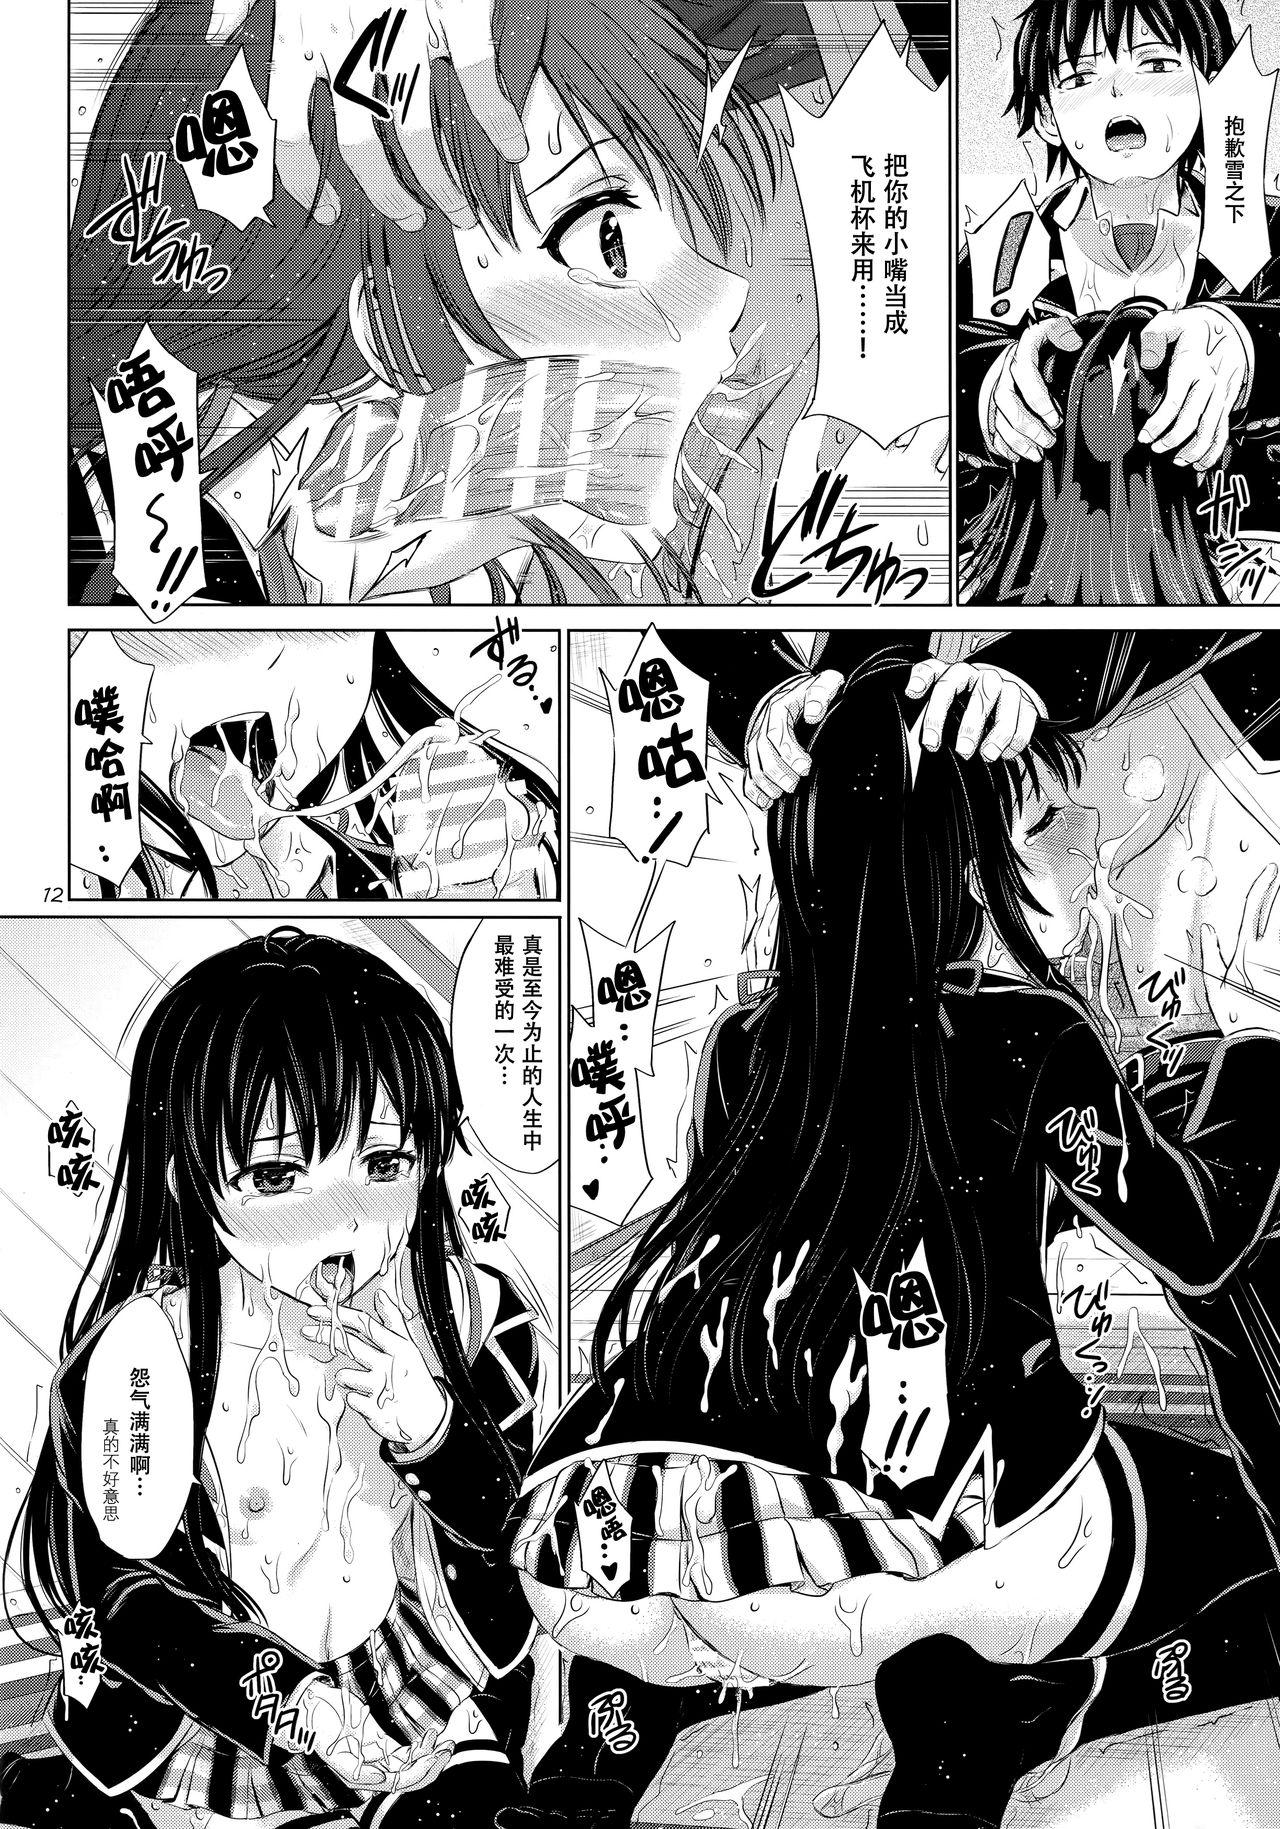 Newbie Sanrenkyuu wa Asa made Nama Yukinon. - Yahari ore no seishun love come wa machigatteiru Ex Girlfriend - Page 12